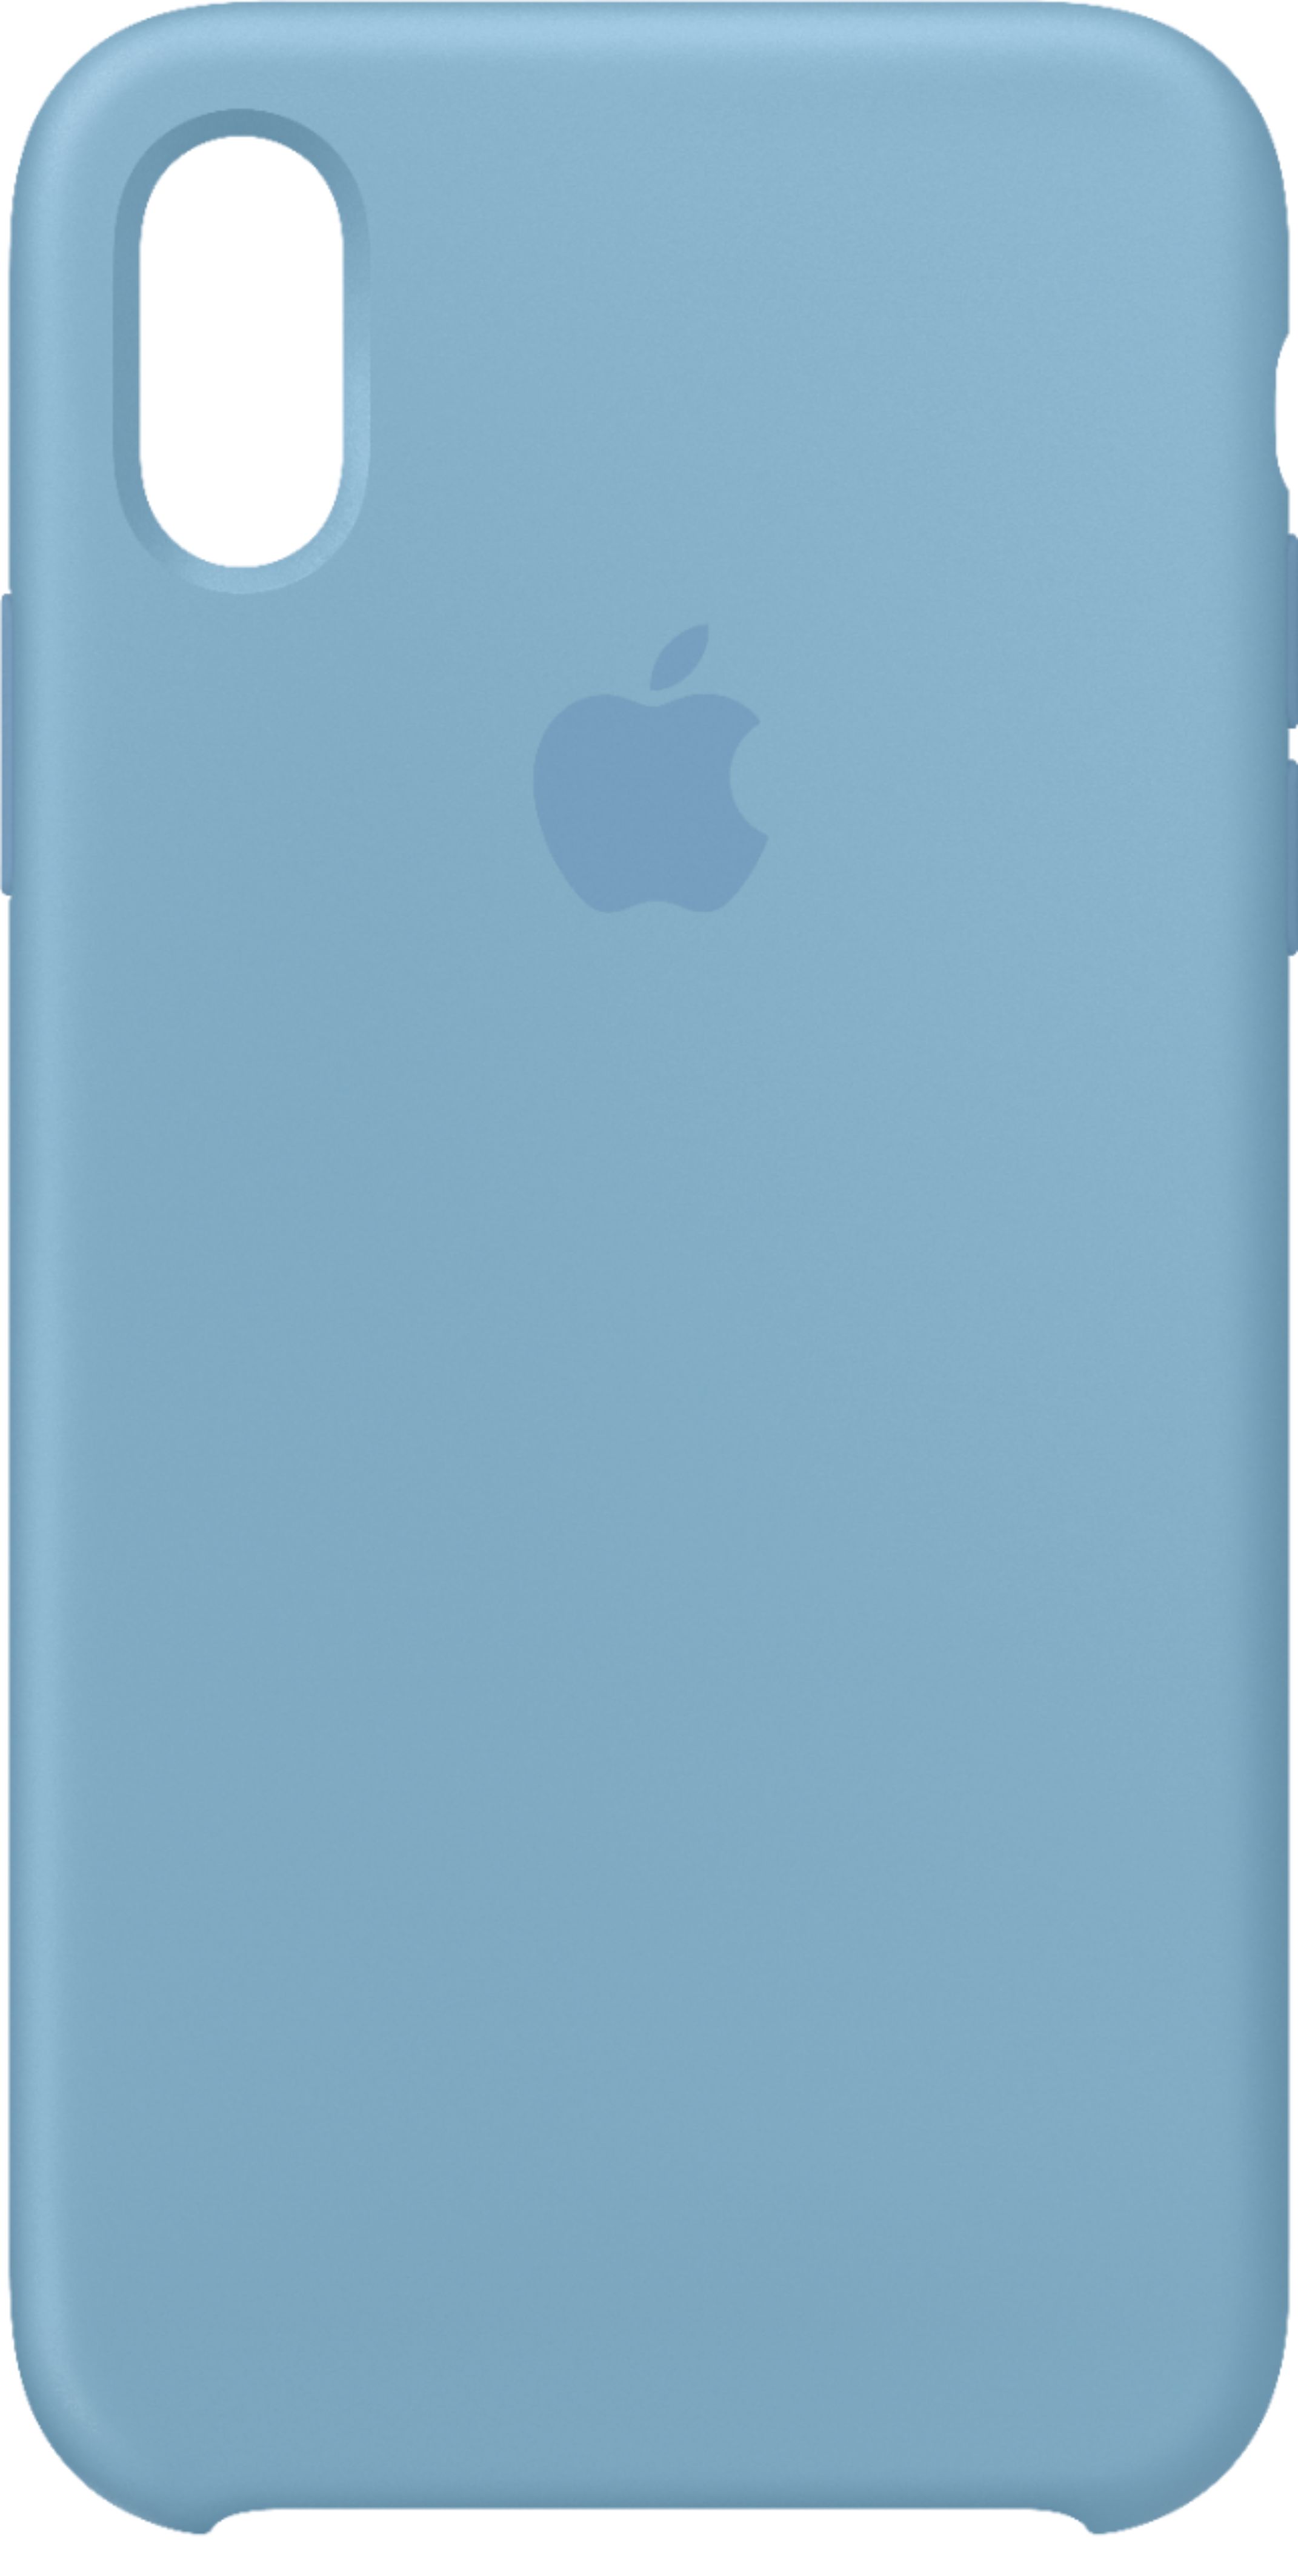 スマートフォン/携帯電話 スマートフォン本体 Apple iPhone® XS Silicone Case Cornflower MW982ZM/A - Best Buy